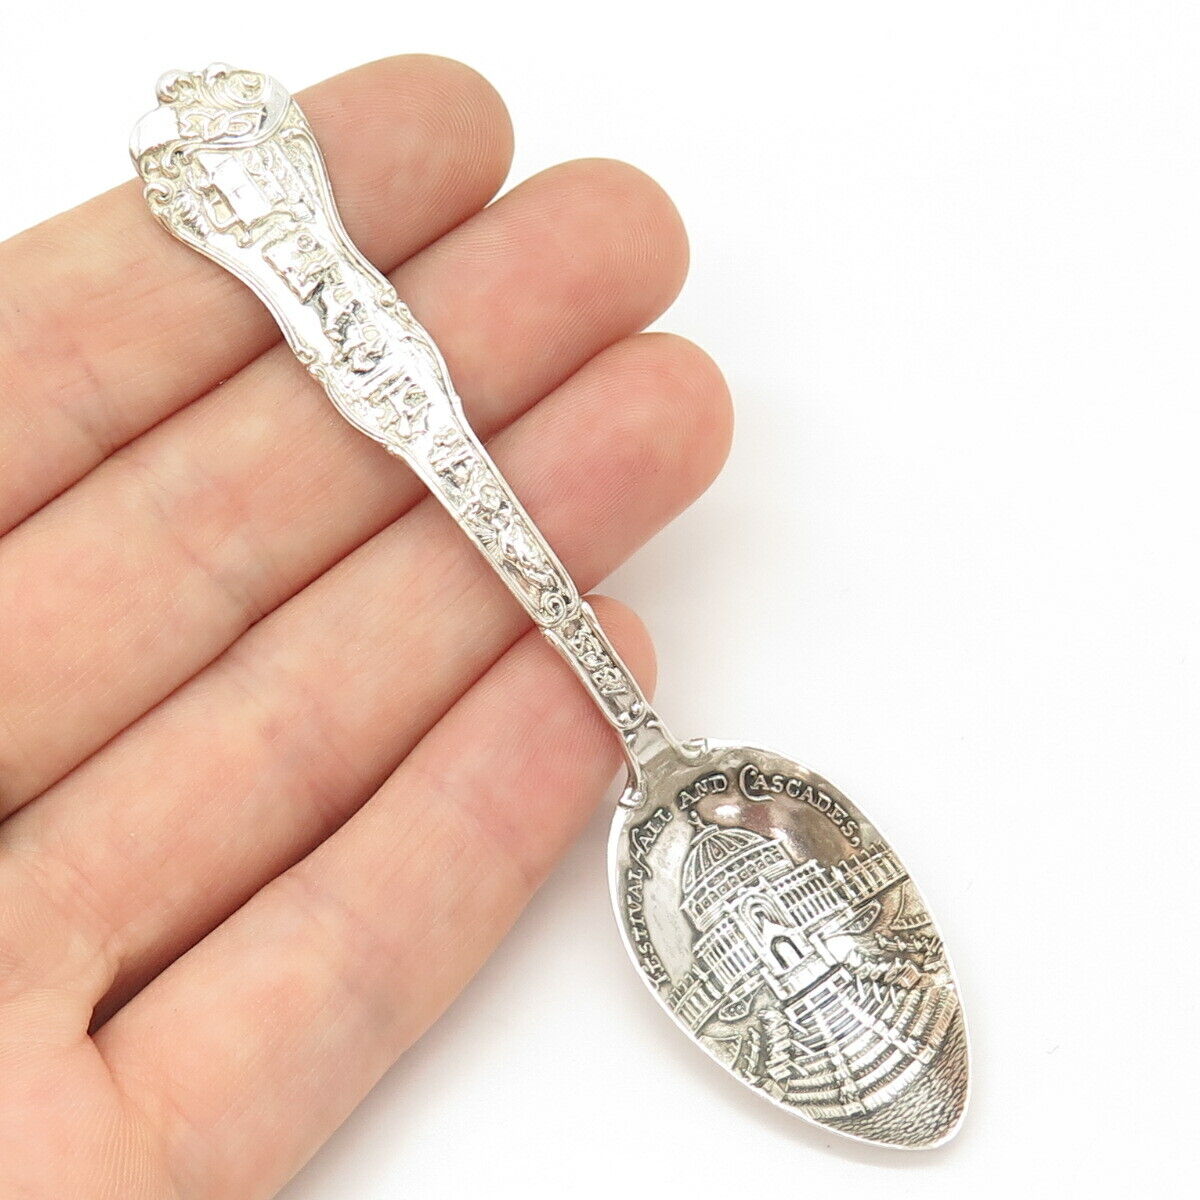 925 Sterling Silver Antique "Louisiana Purchase Expo." Souvenir Spoon